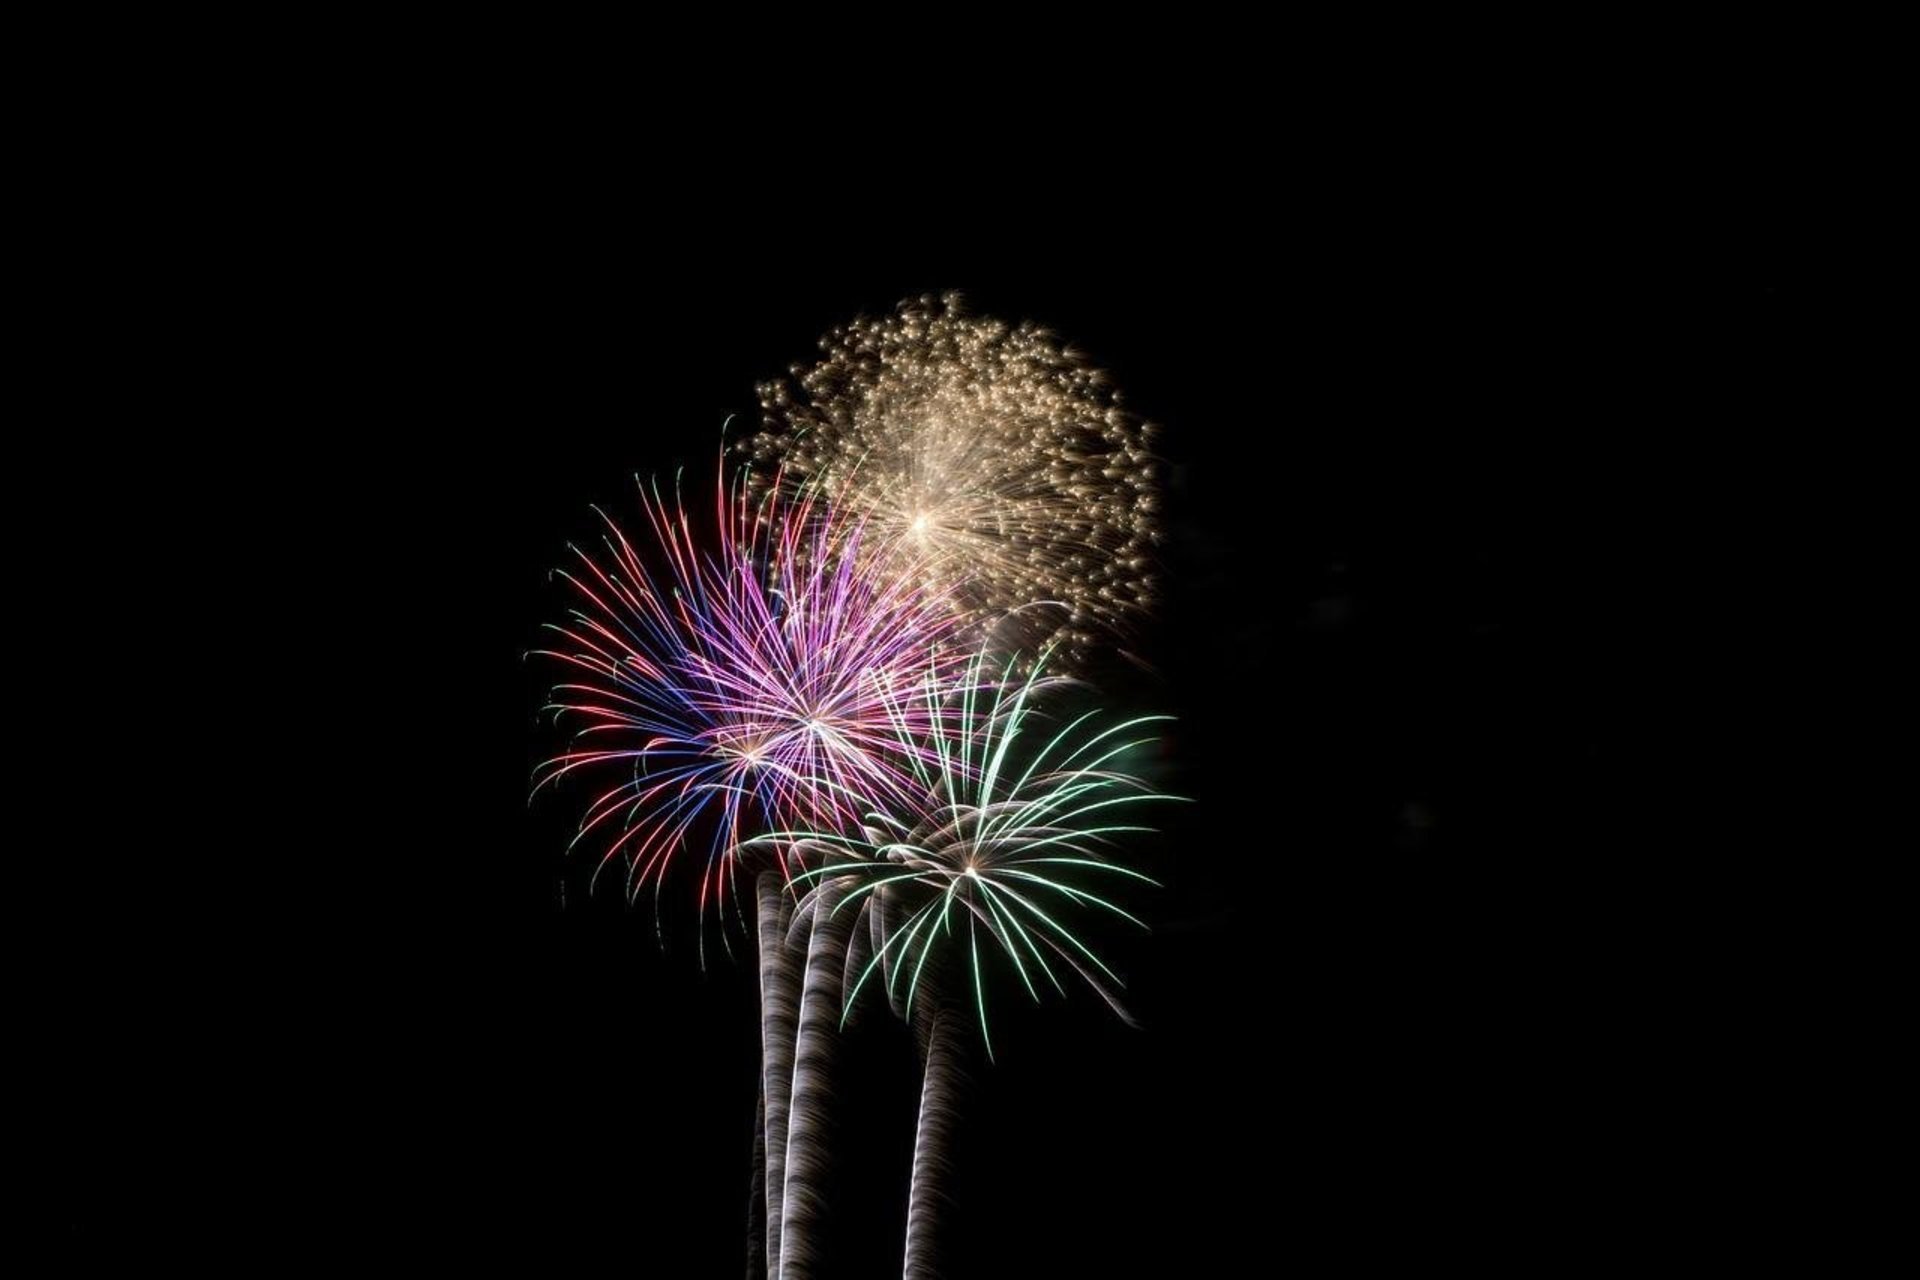 Wochenendaktivitäten & Feuerwerk am 4. Juli (Independence Day) in Fond du Lac